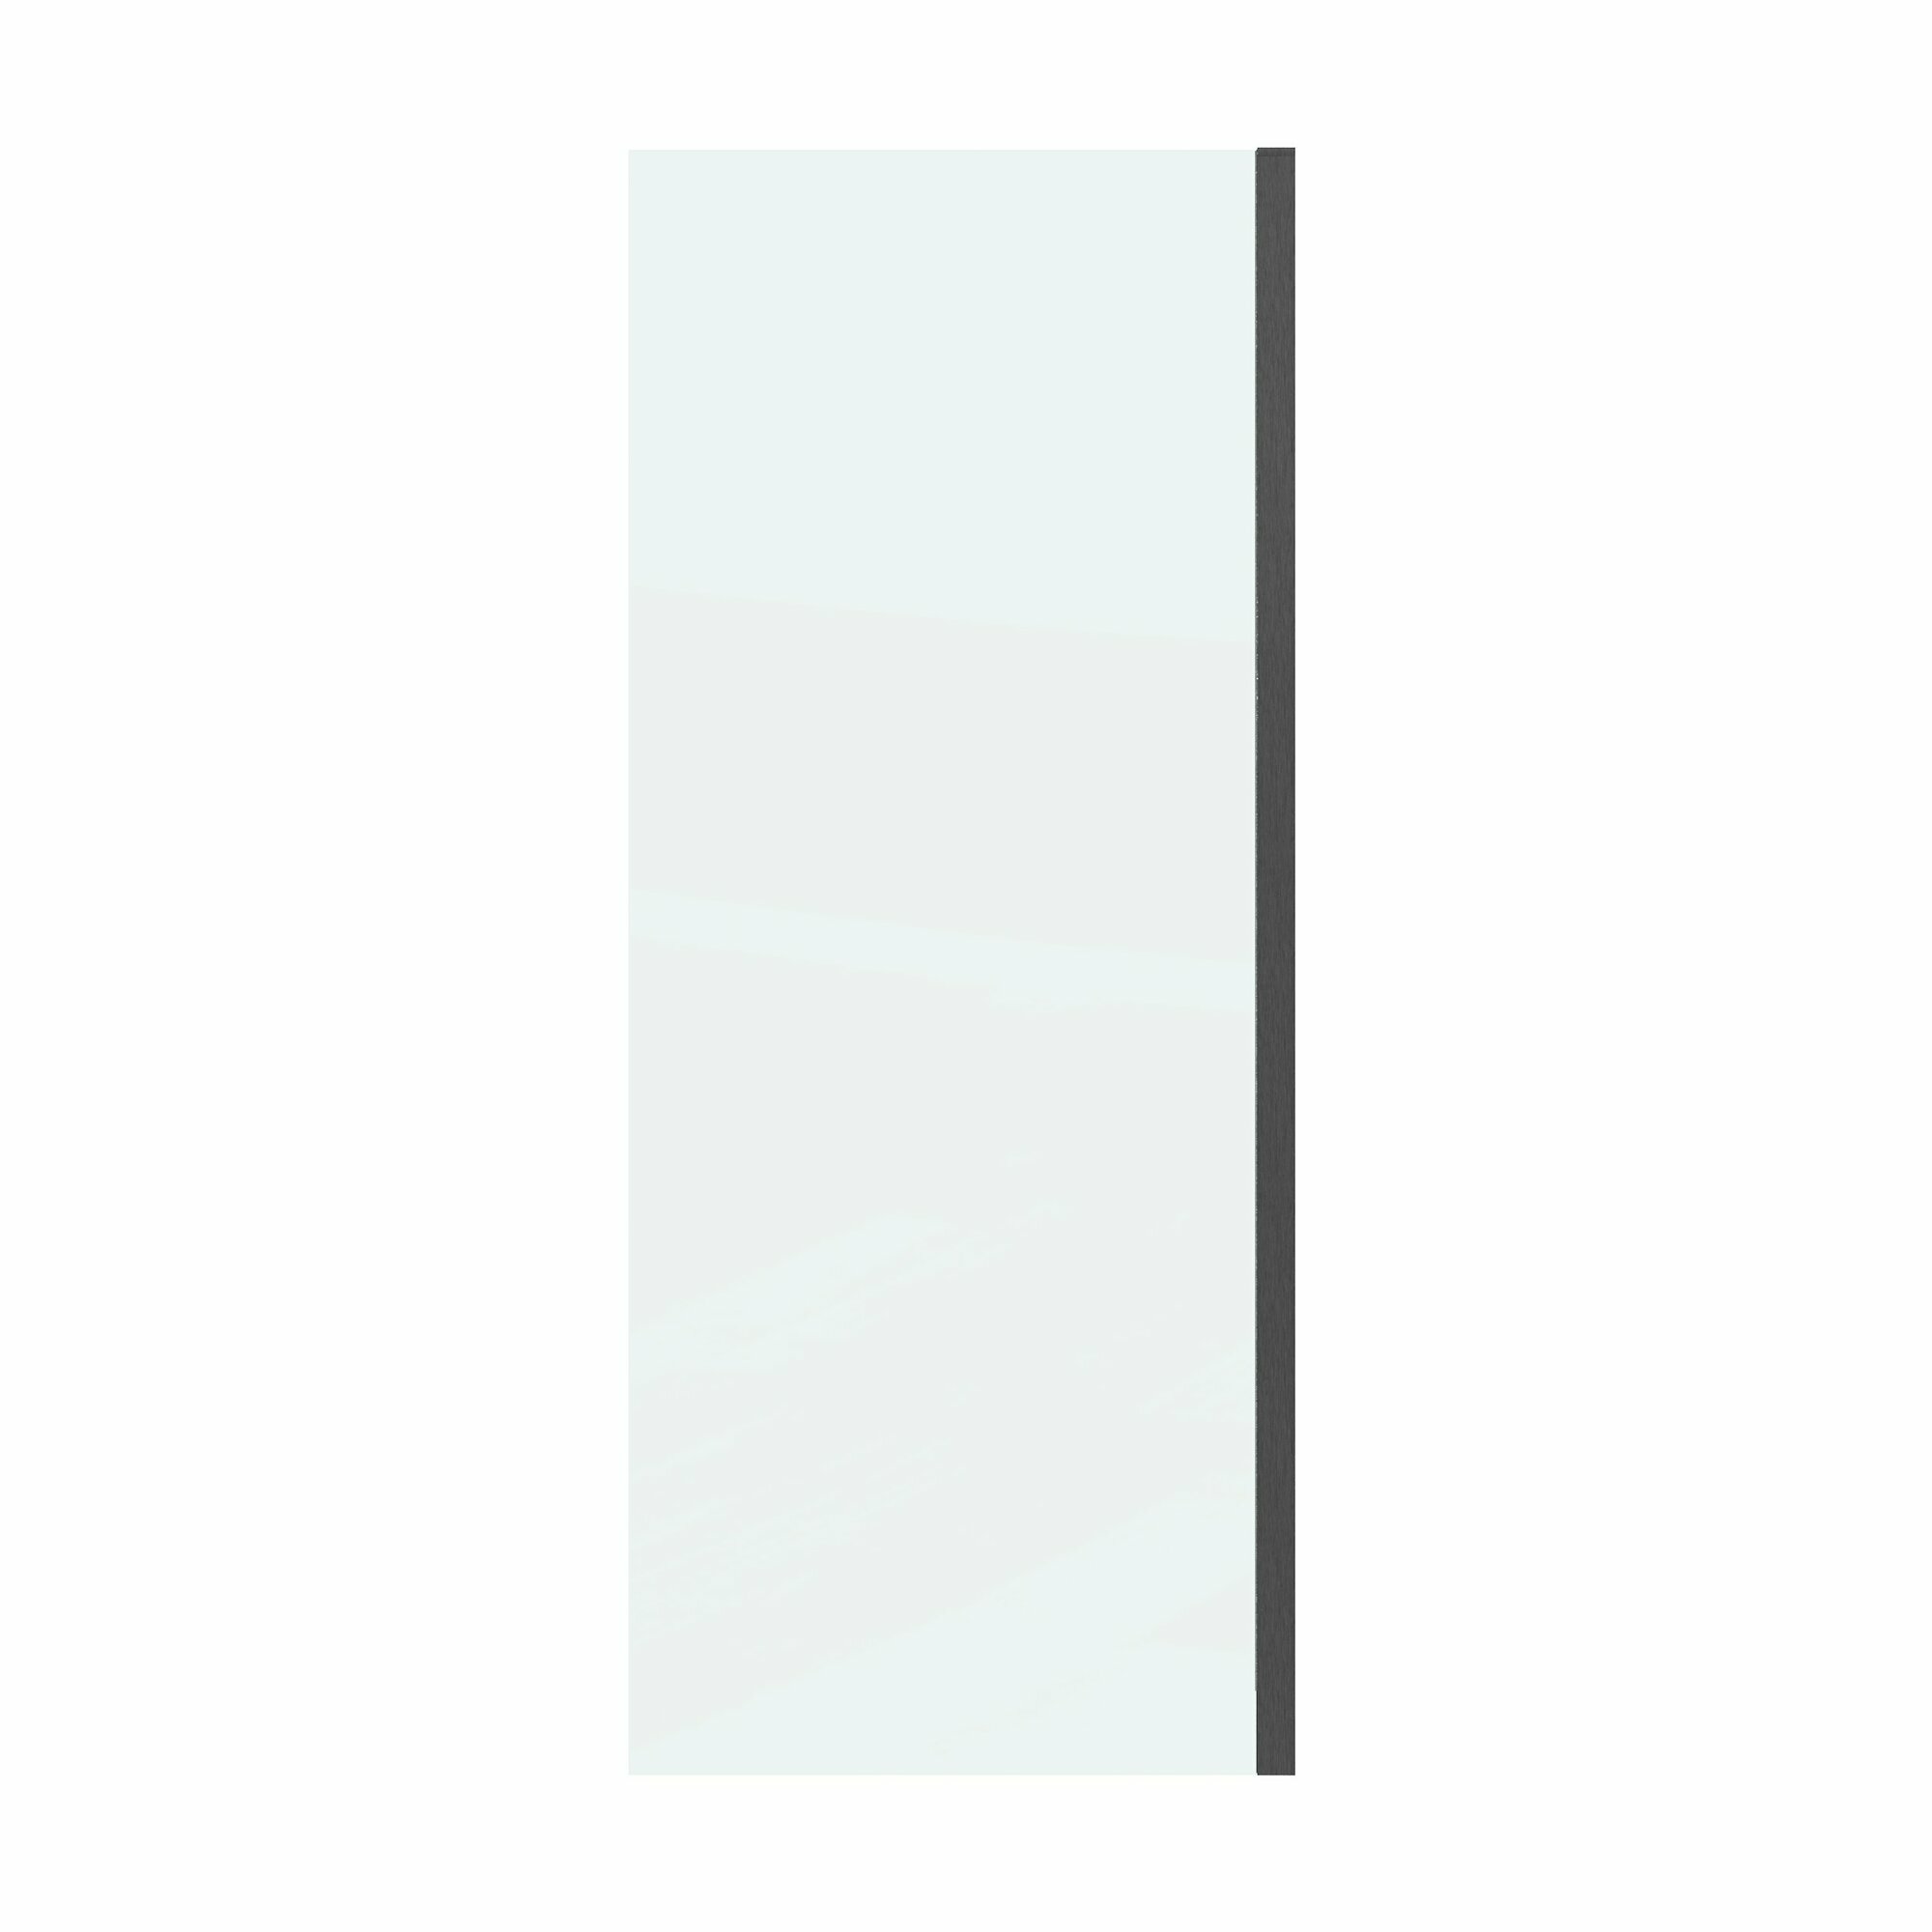 Боковая стенка Grossman Classic 80x195 200. K33.04.80.42.00 стекло прозрачное, профиль графит